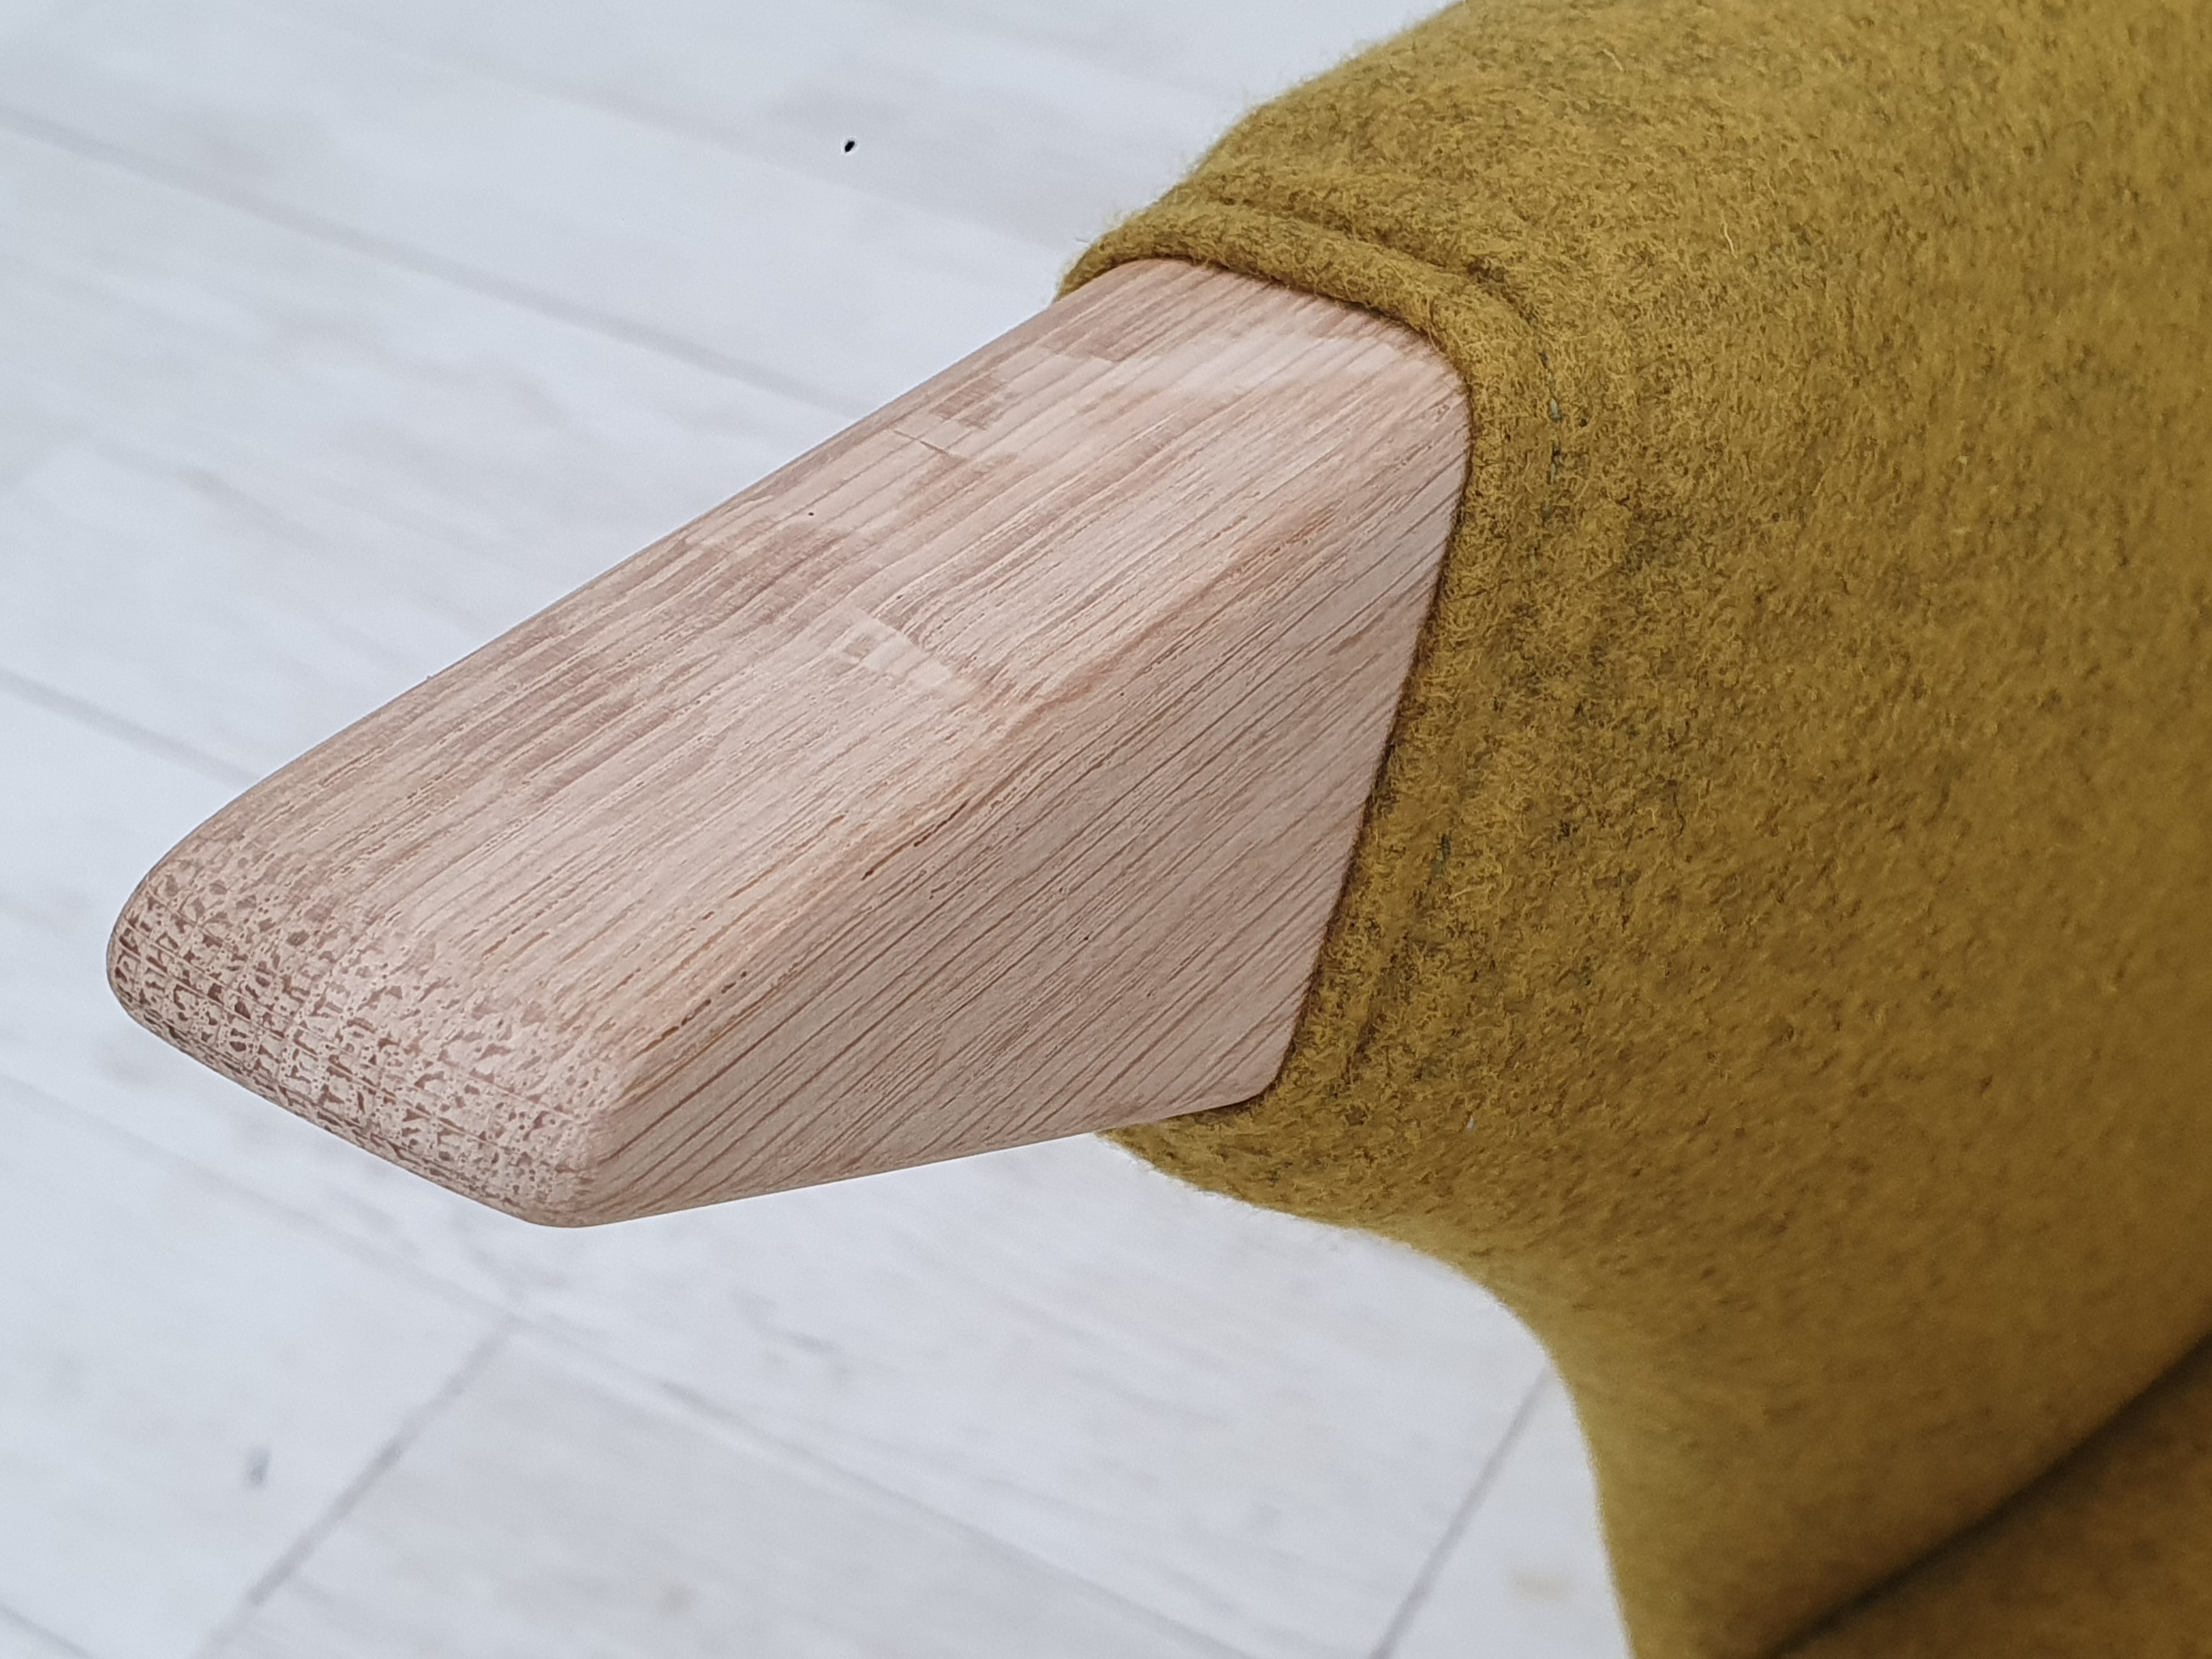 Lænestol model SK 2019, carry-gul møbeluld, udstillingsmodel